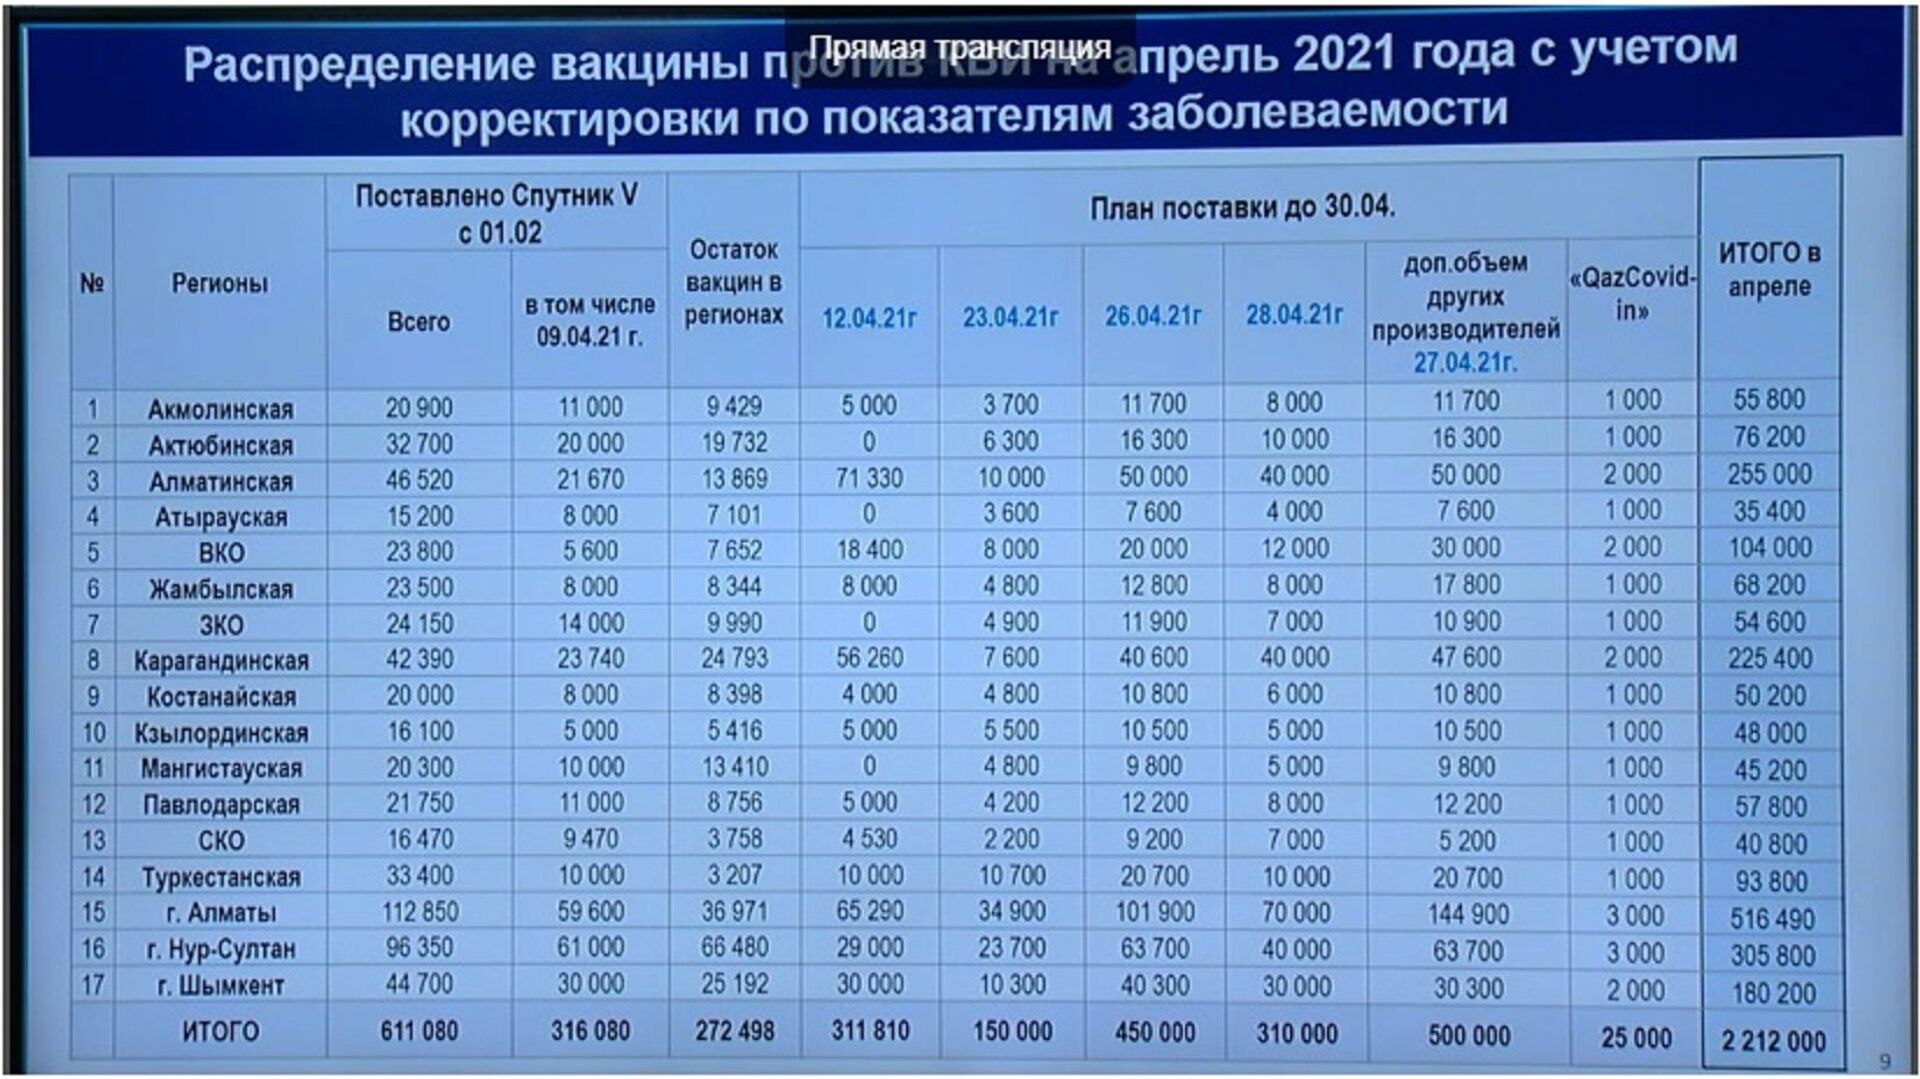 Как Казахстан планирует вакцинировать к сентябрю 10 миллионов человек - планы Минздрава - Sputnik Казахстан, 1920, 12.04.2021